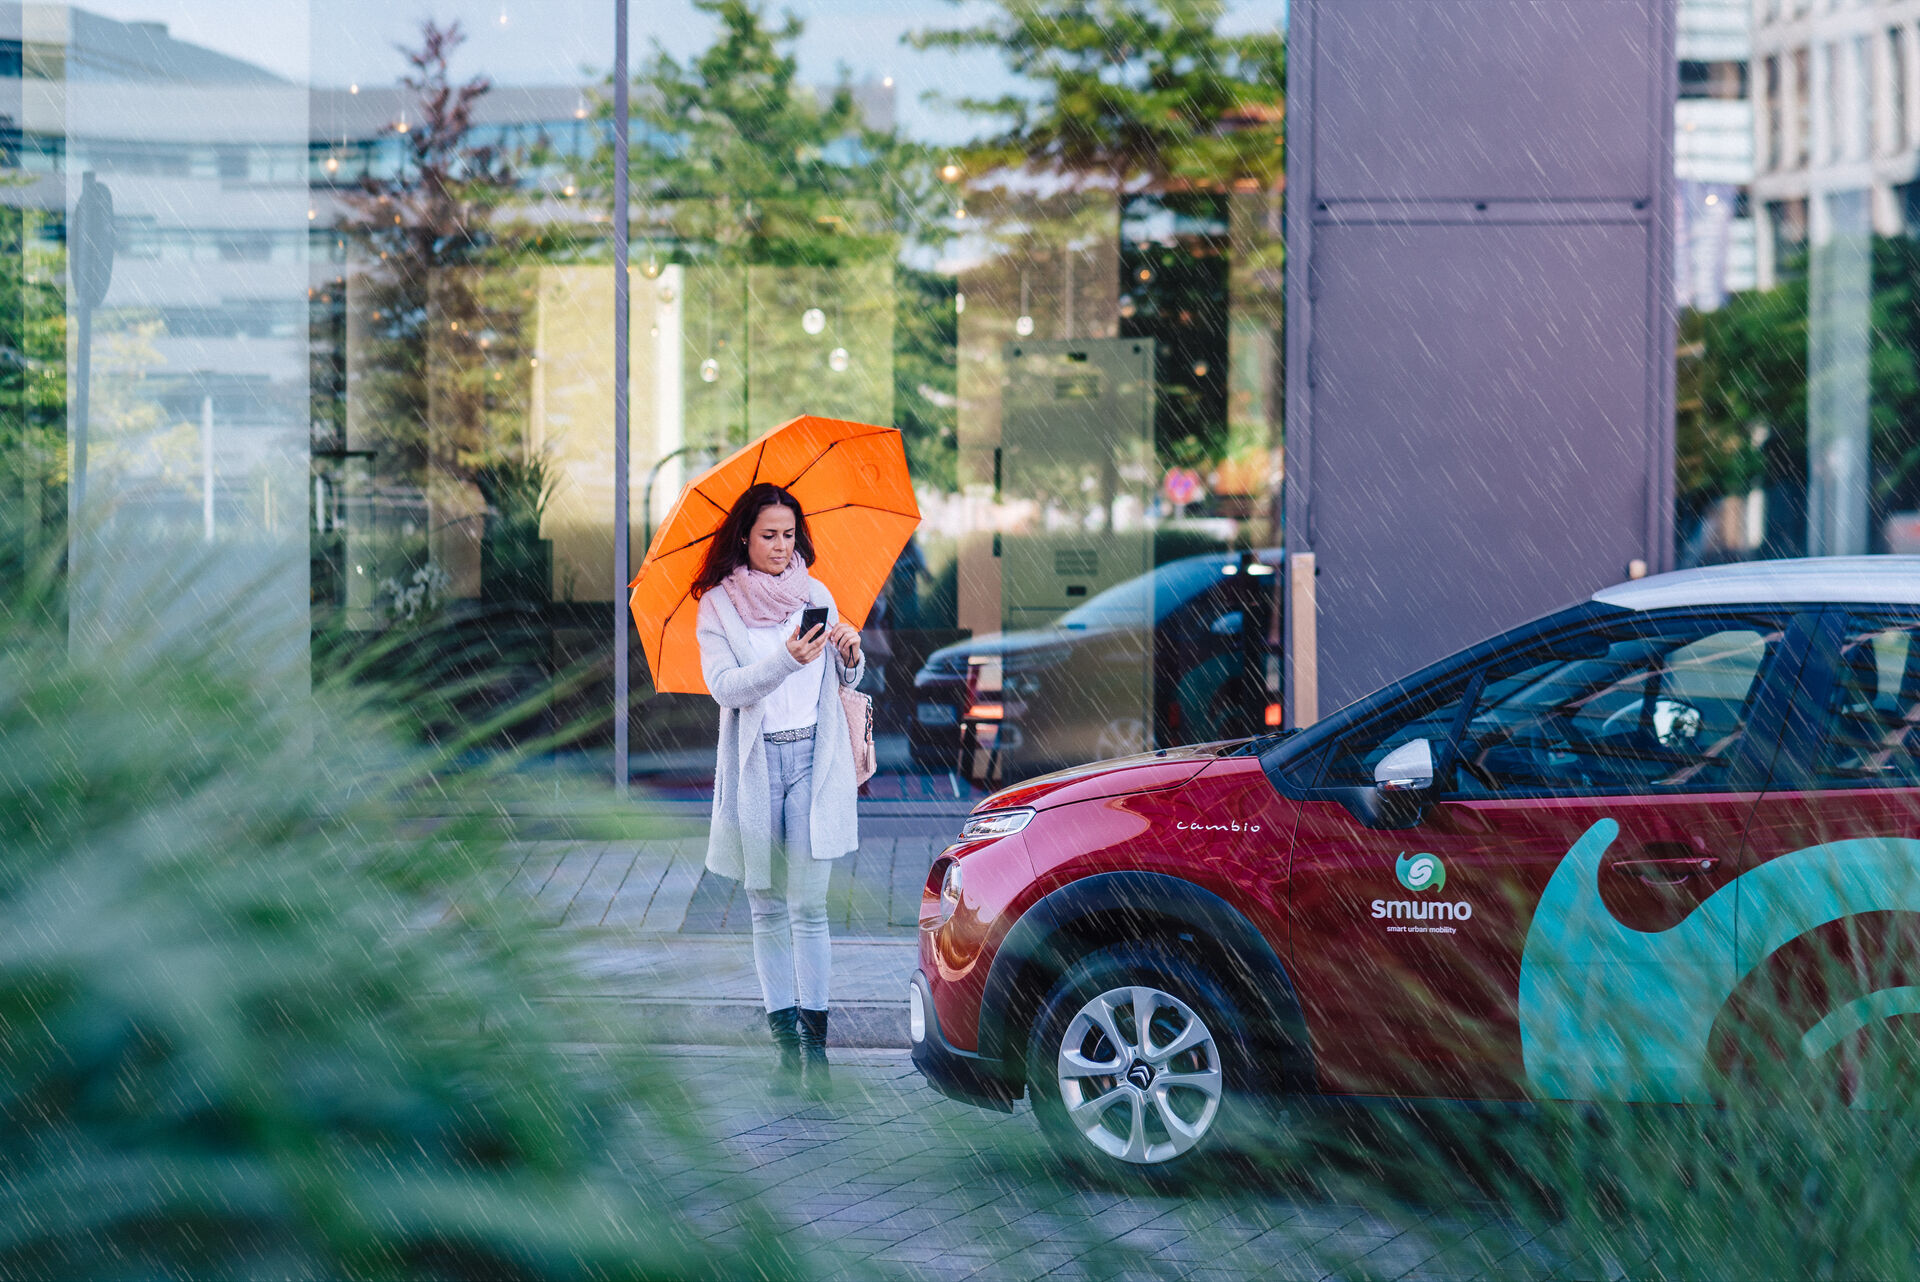 Frau mit orangenem Schirm verlässt Gebäude.